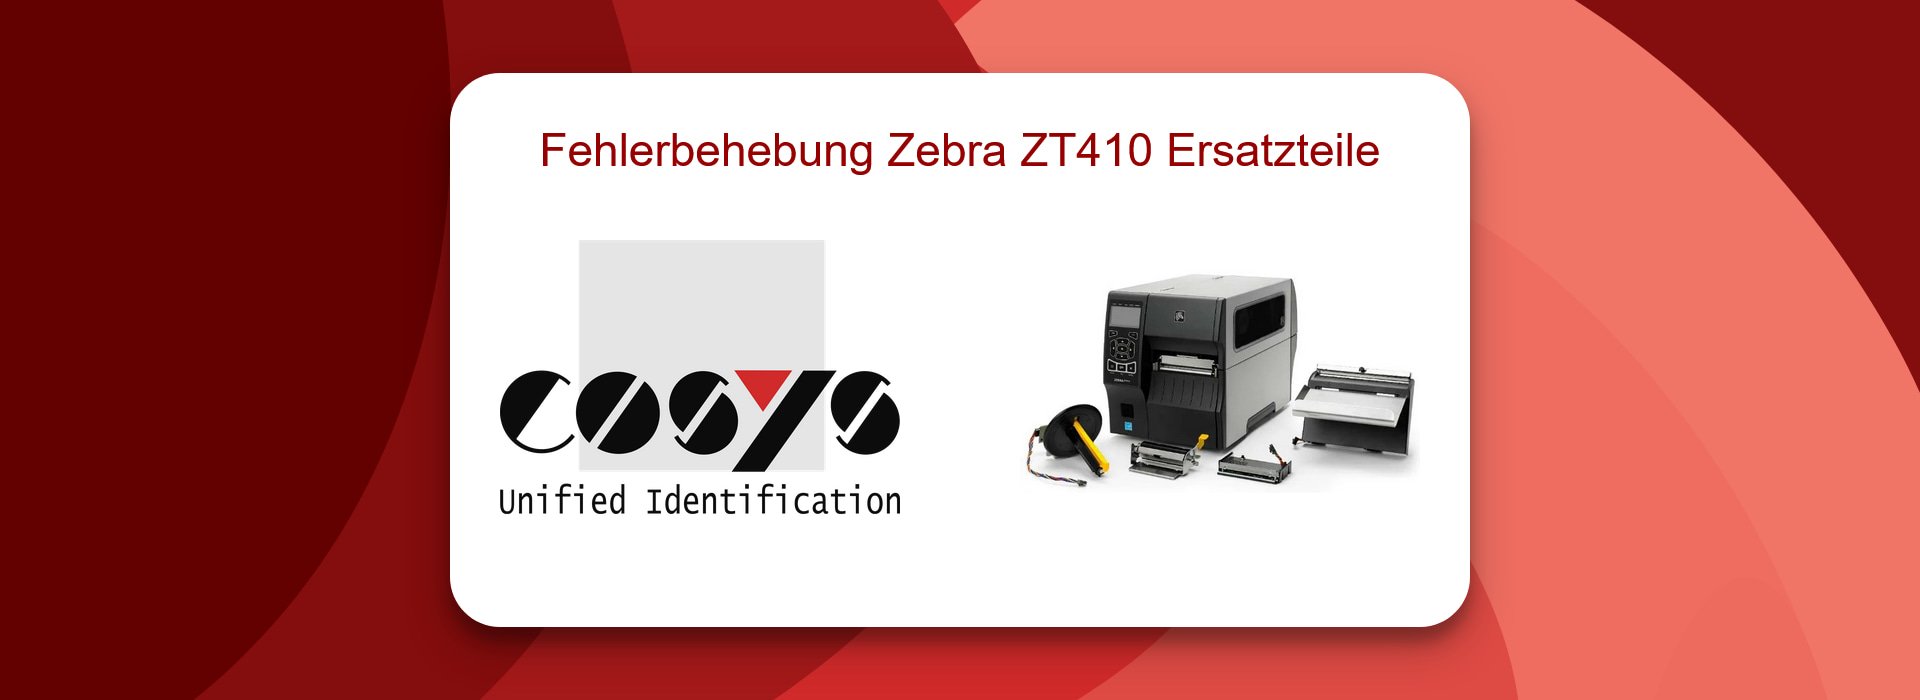 Fehlerbehebung mit Zebra ZT410 Ersatzteile